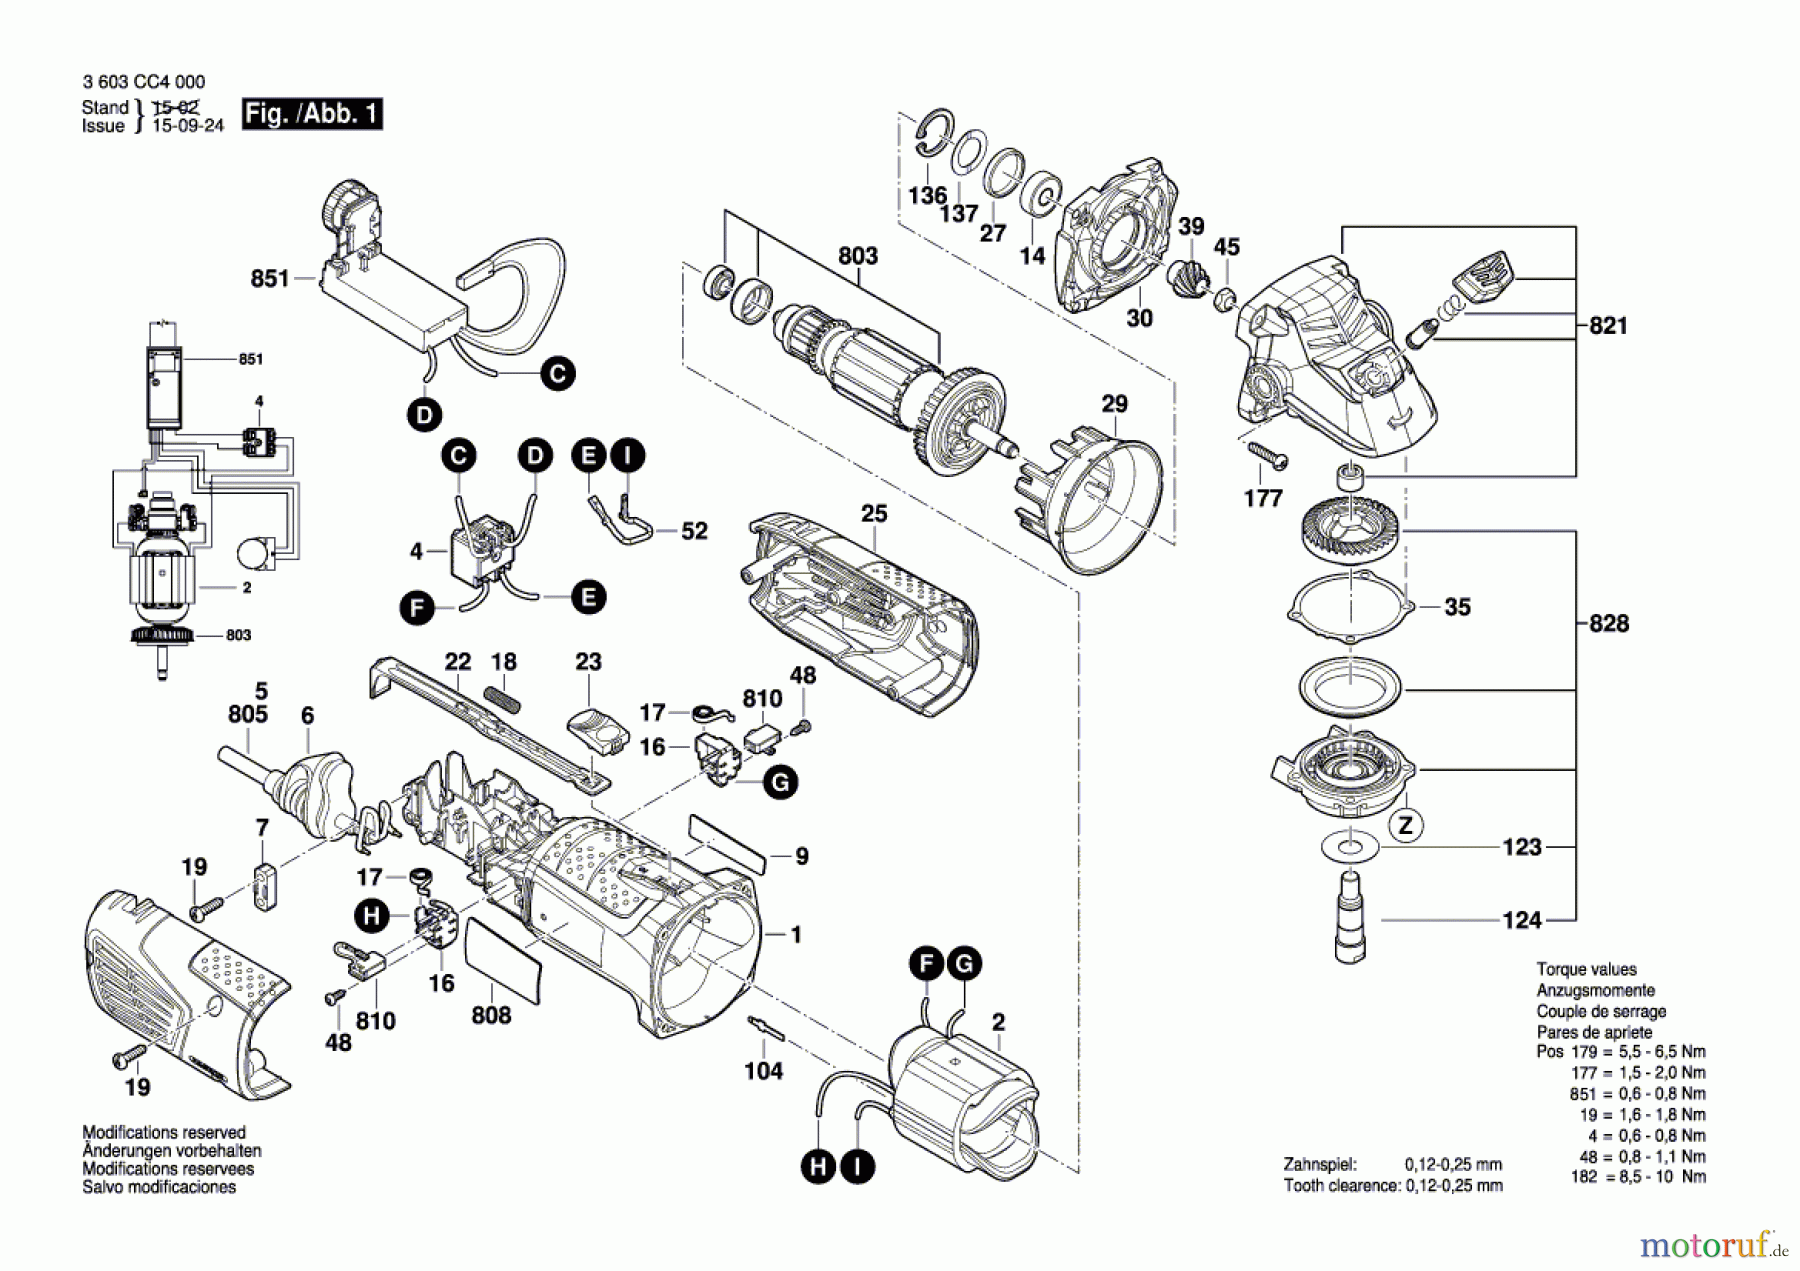  Bosch Werkzeug Trockenbauschleifer PWR 180 CE Seite 1